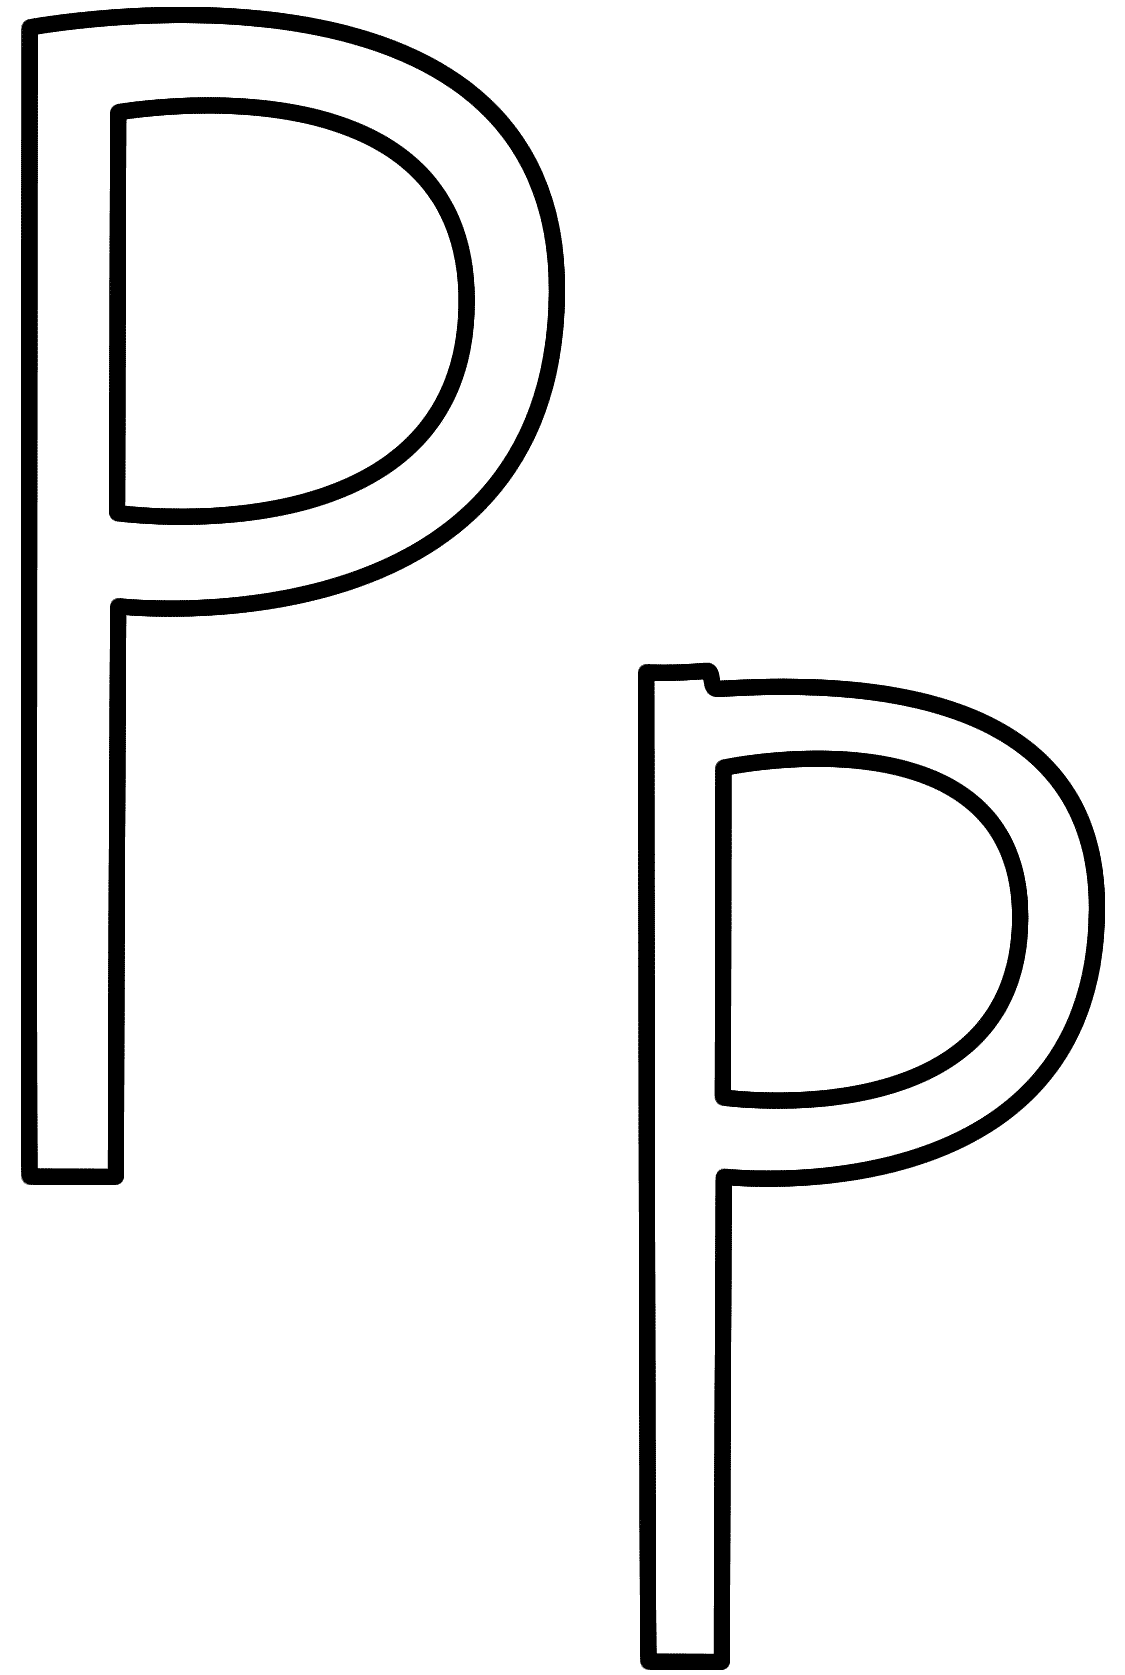 letter-p-coloring-page-alphabet